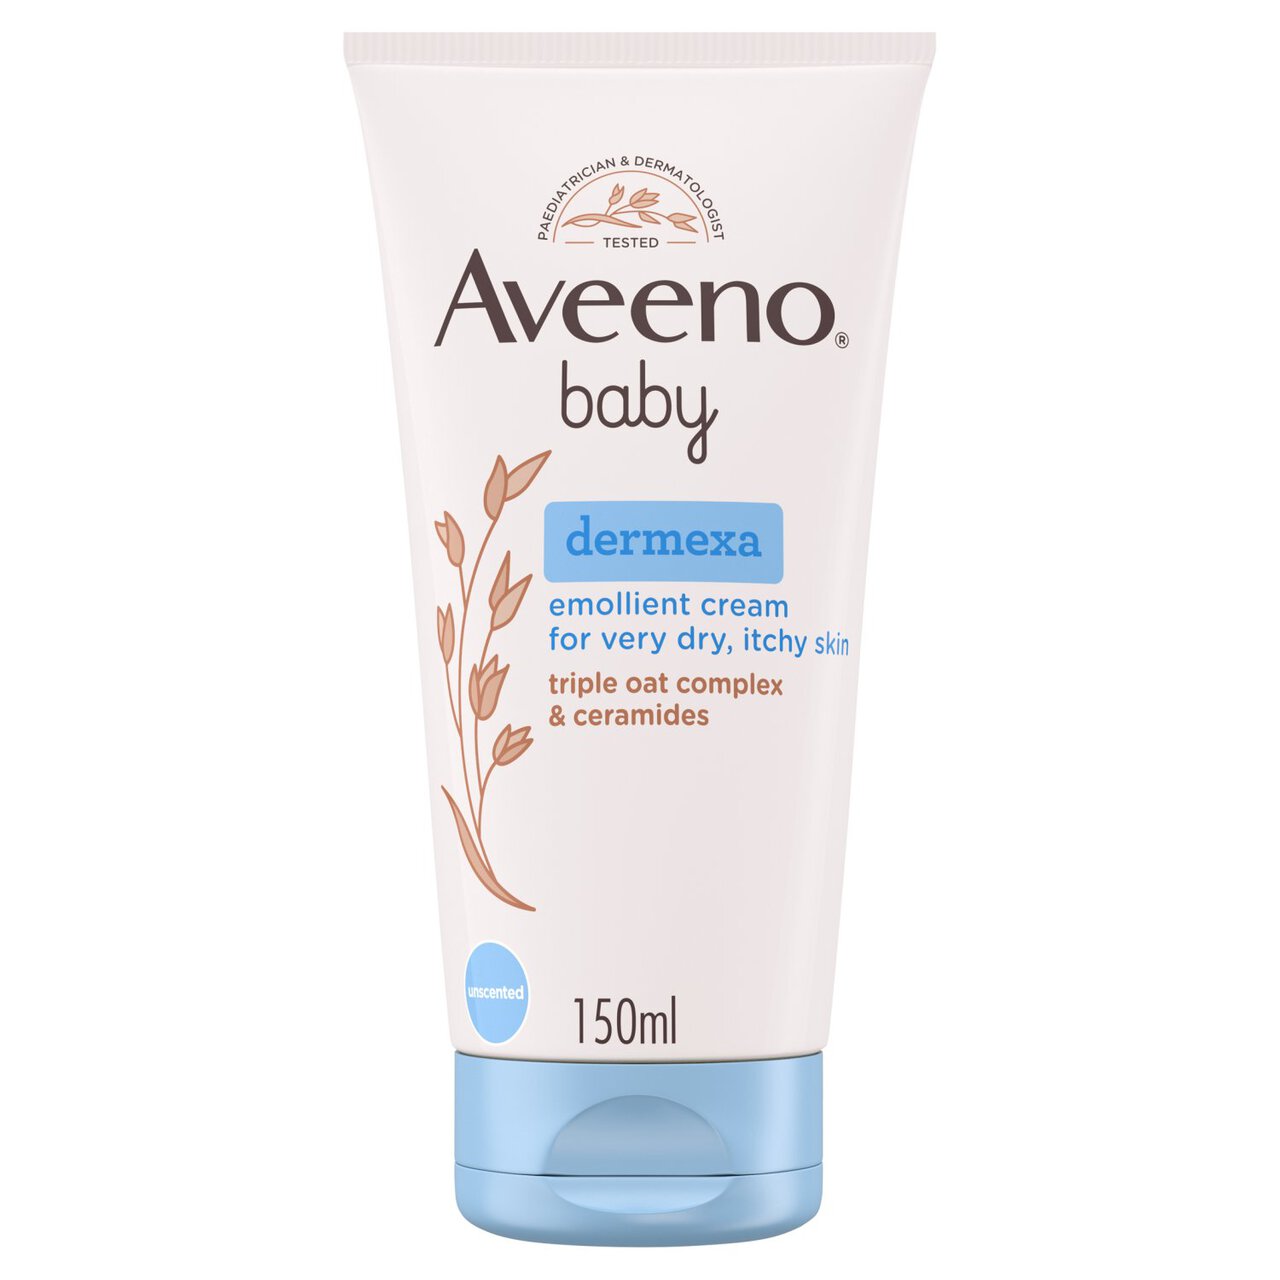 AVEENO Baby Dermexa Emollient Cream 150ml 150ml